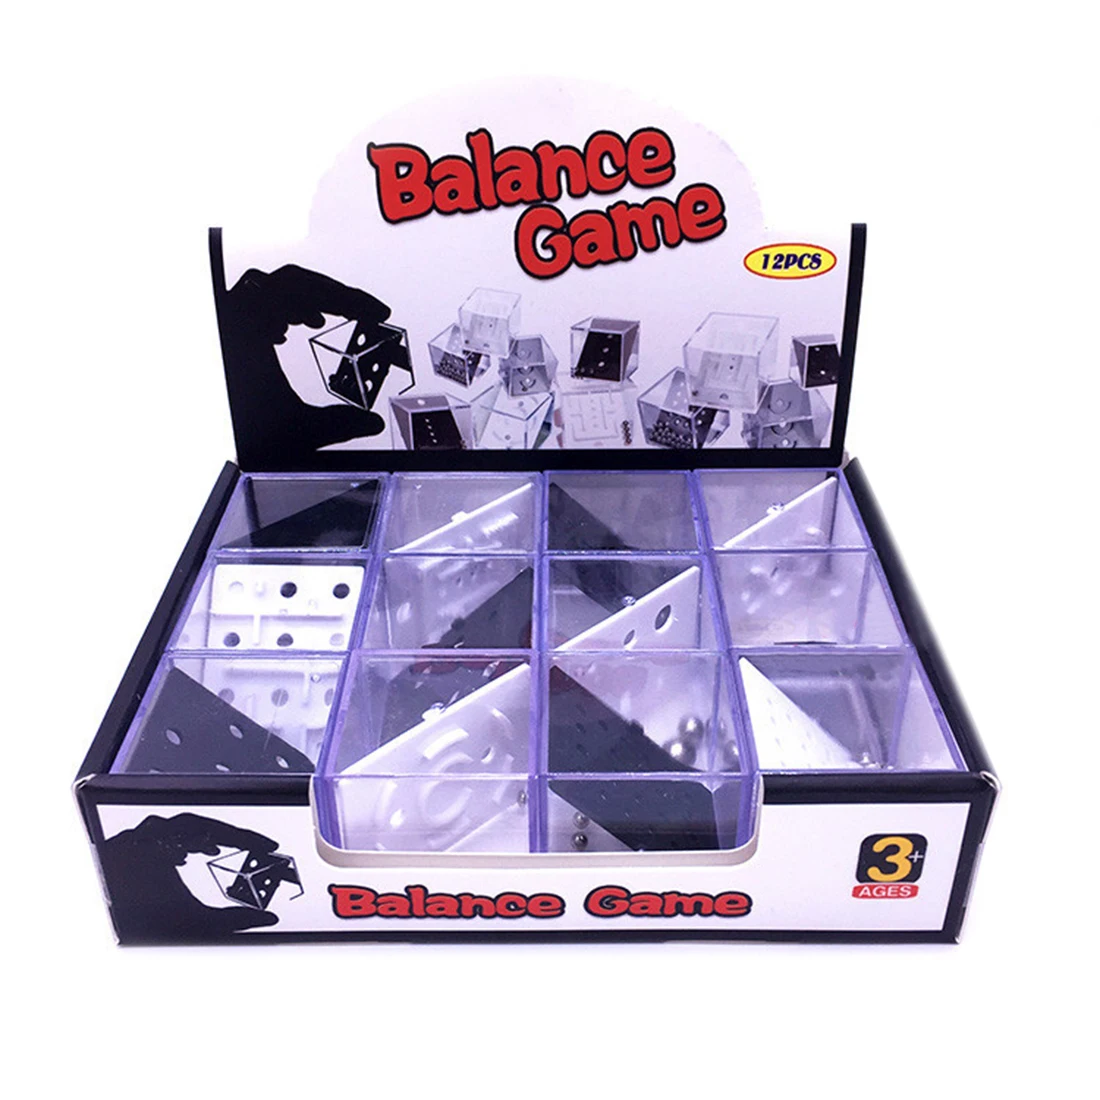 2019 12 шт. балансировочные коробки-головоломки со стальным шариком, развивающие игрушки подарки, декомпрессионная игрушка для детей и